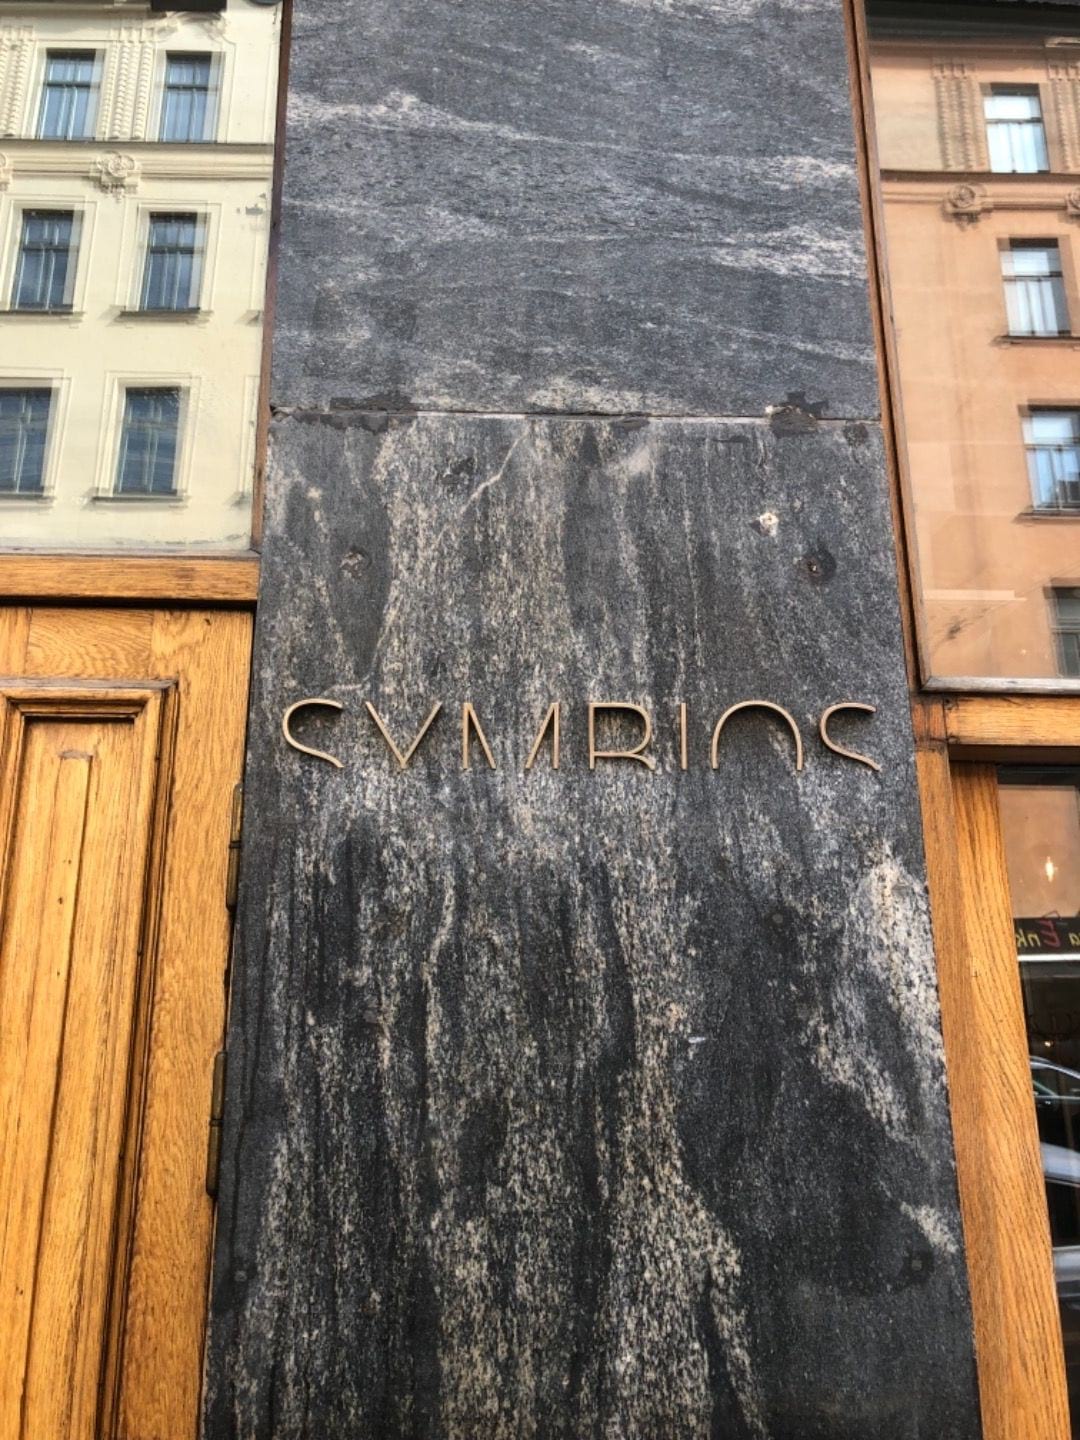 Photo from Symbios by Fredrik J. (01/05/2019)